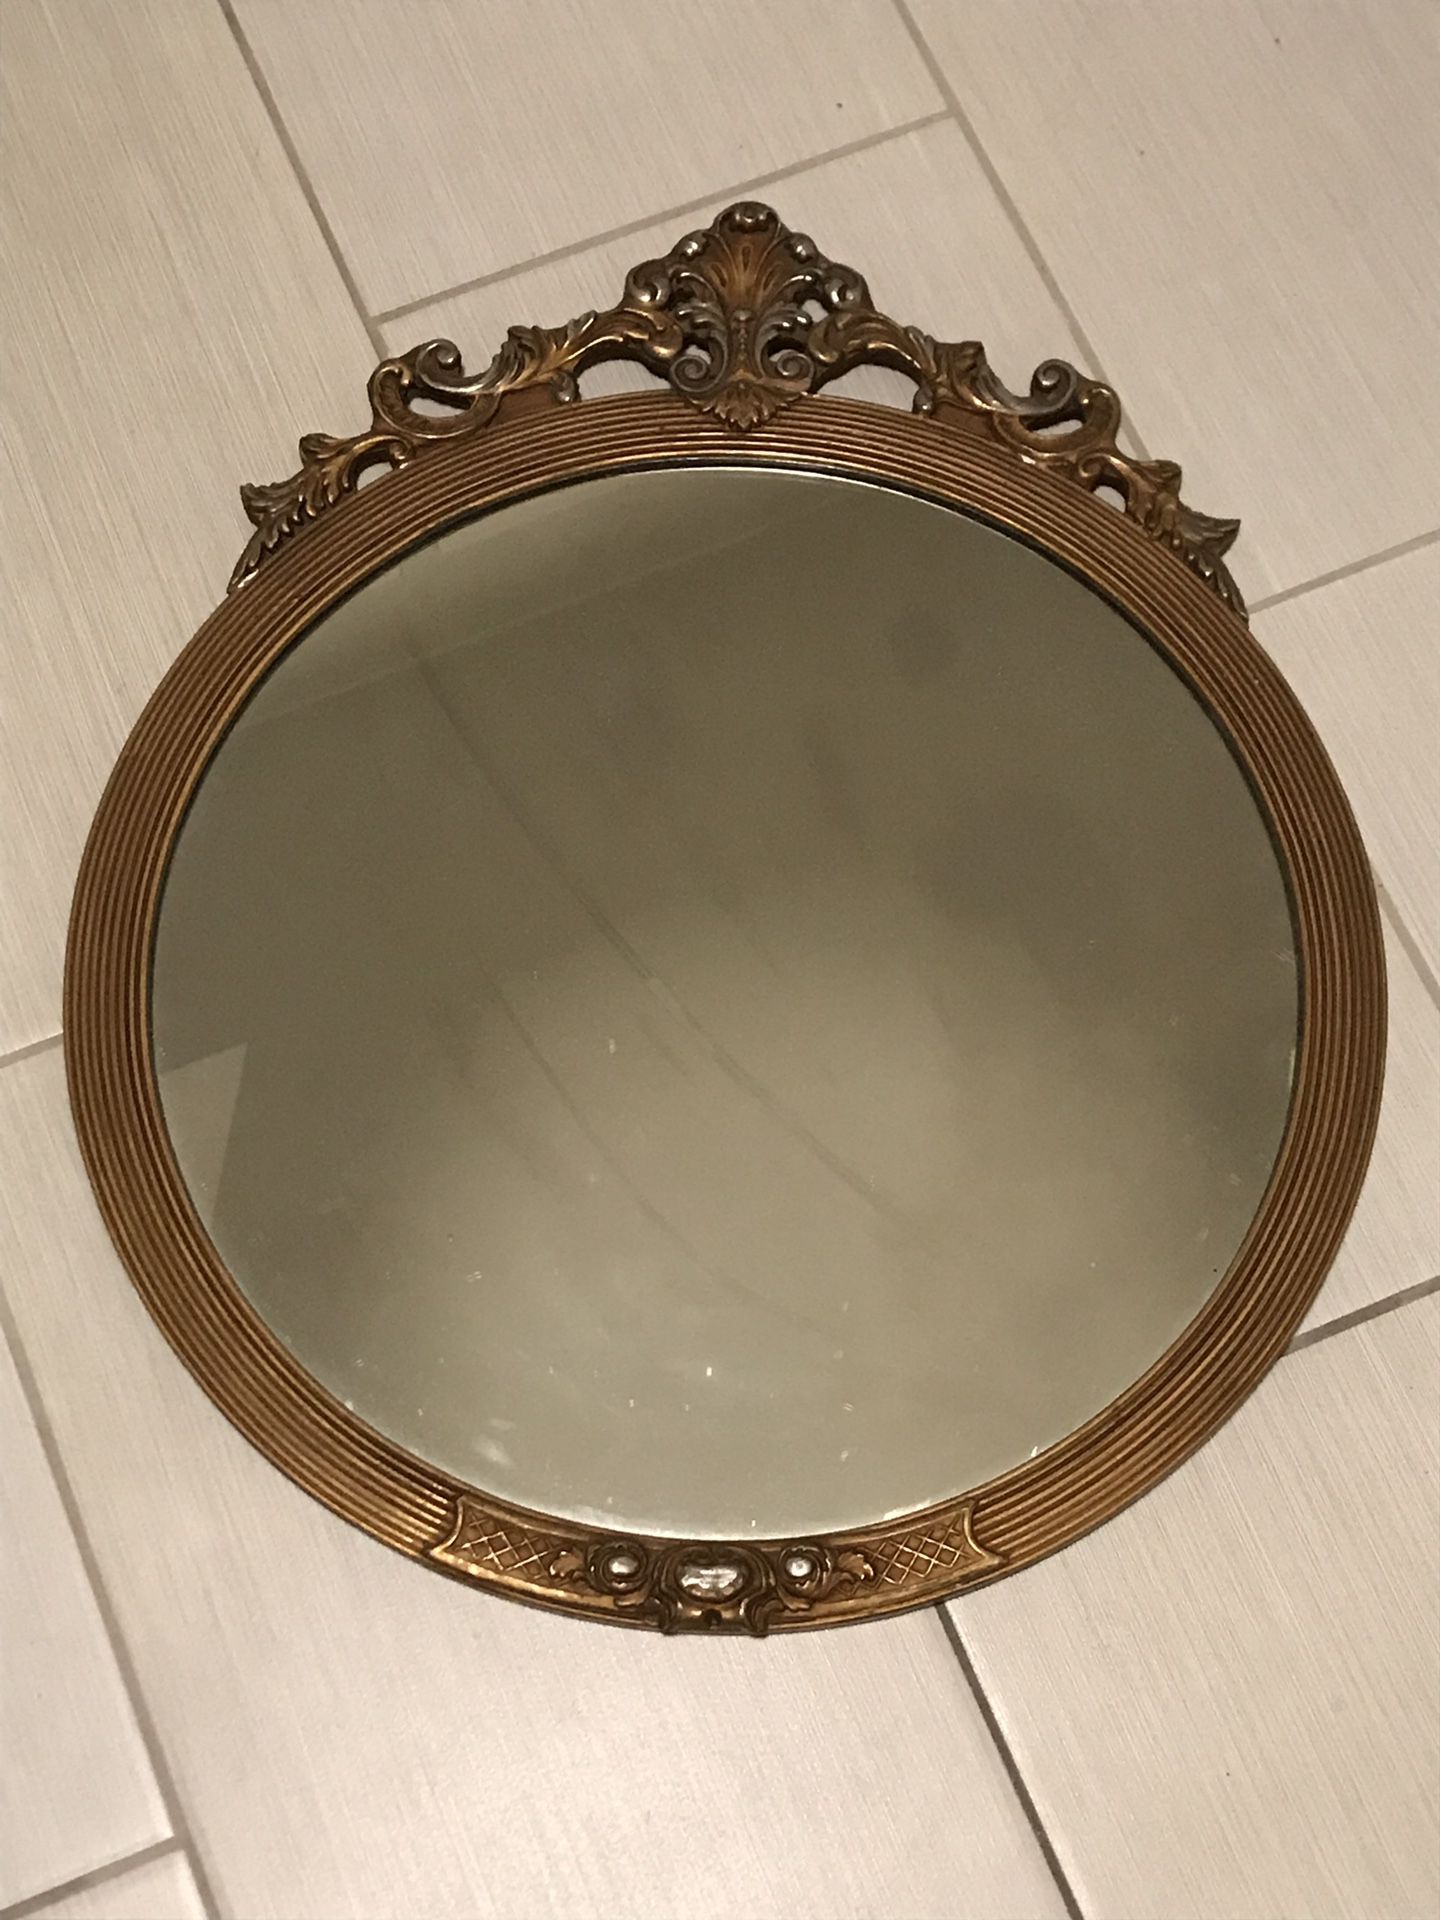 Antique gold round mirror